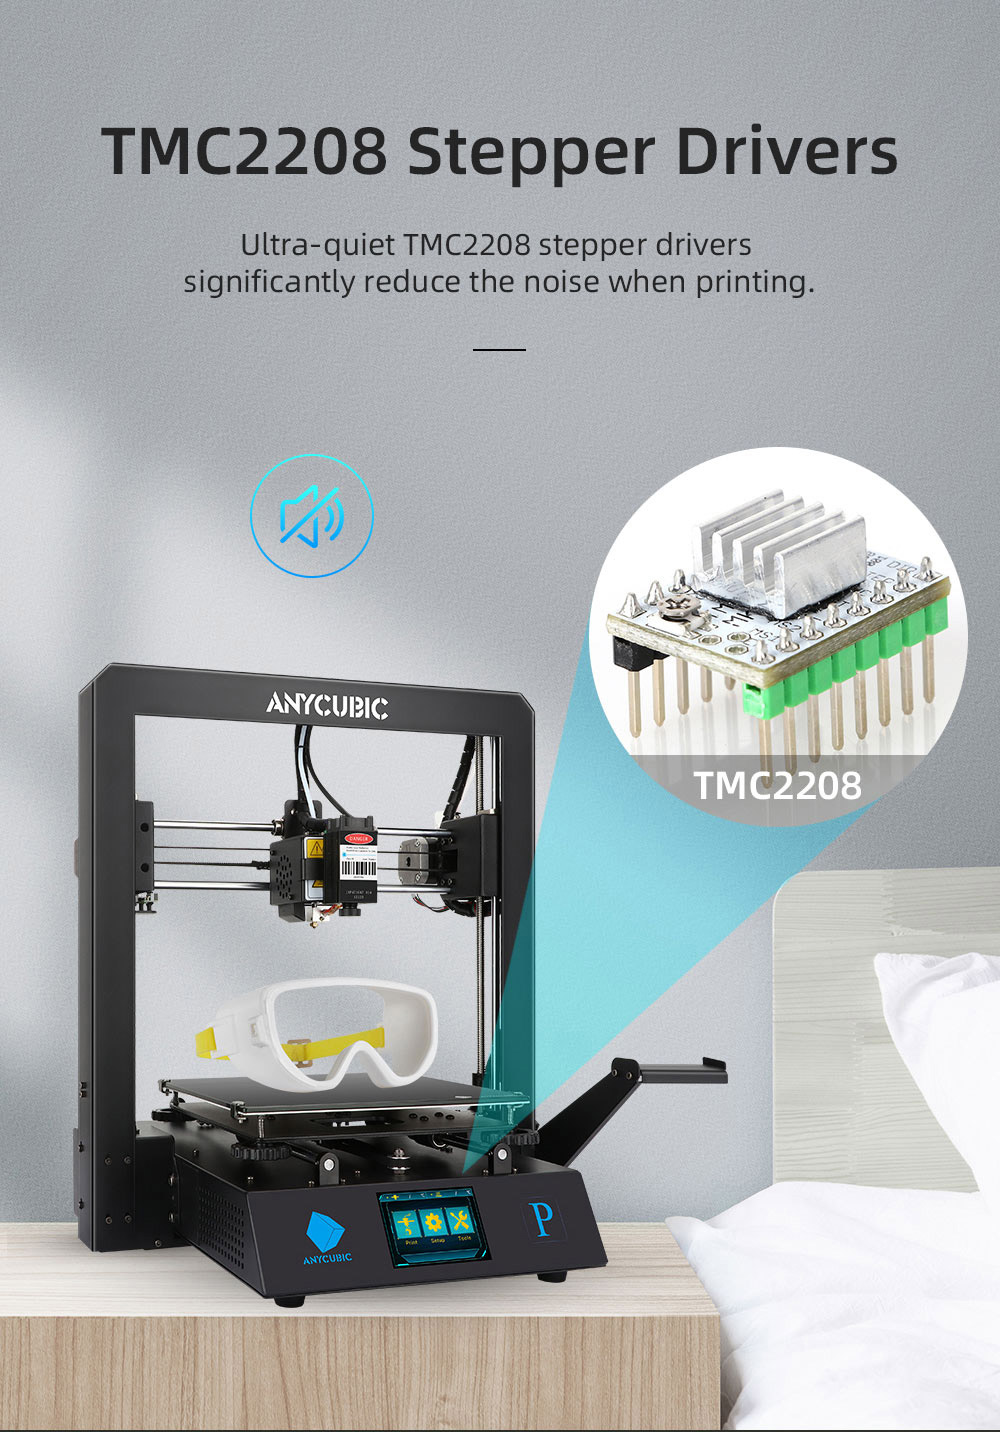 Anycubic Mega Pro3Dプリンター2in1D印刷およびレーザー彫刻スマート補助レベリングデュアルギアエクストルーダー3x210x210mm